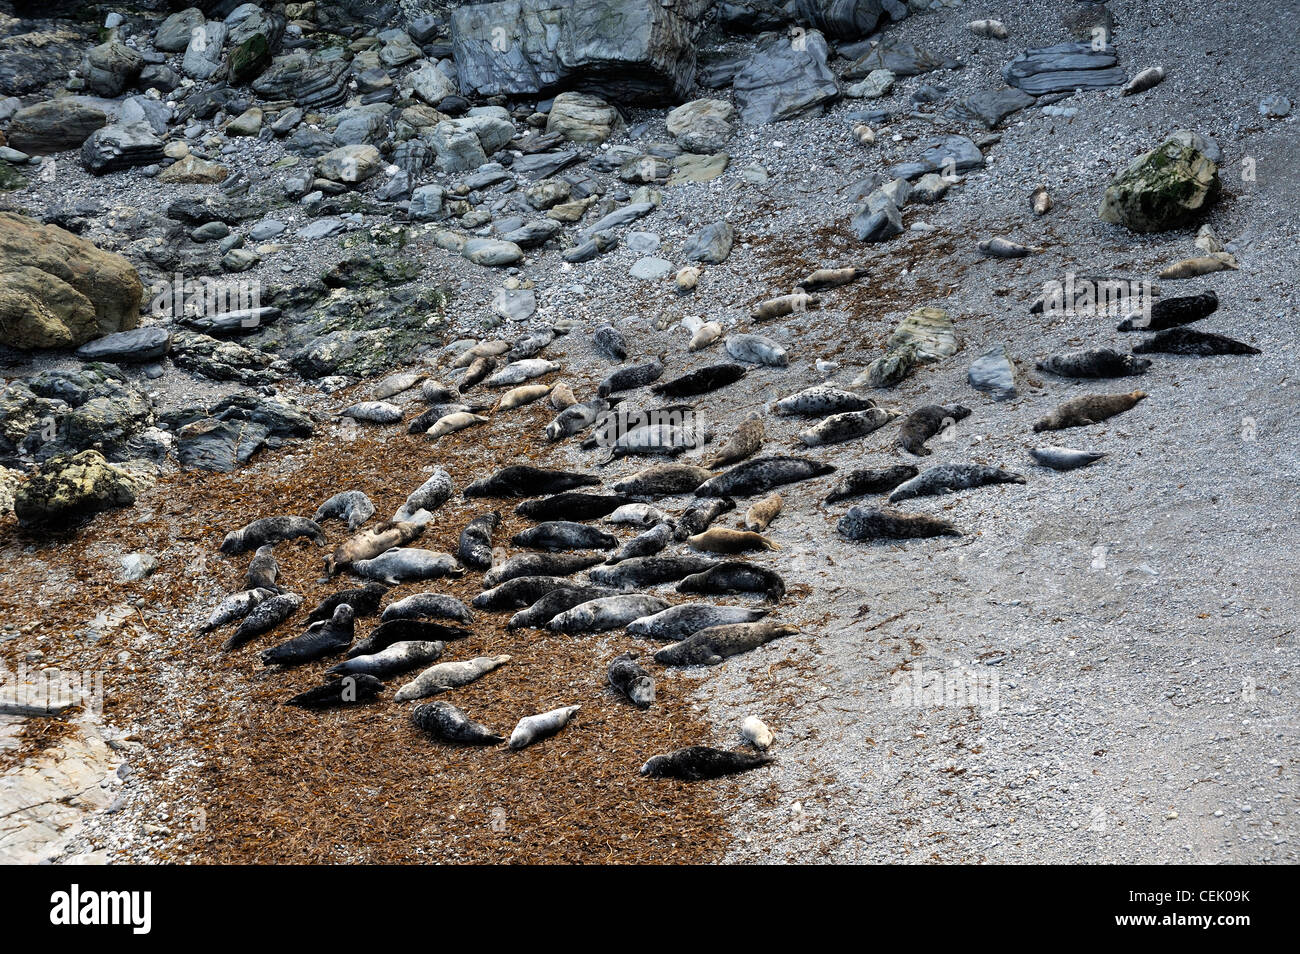 Les phoques gris de mouton Cove, tête de Godrevy vu du South West Coast Path. Extrémité nord de la baie de St Ives, Cornwall, England, UK Banque D'Images